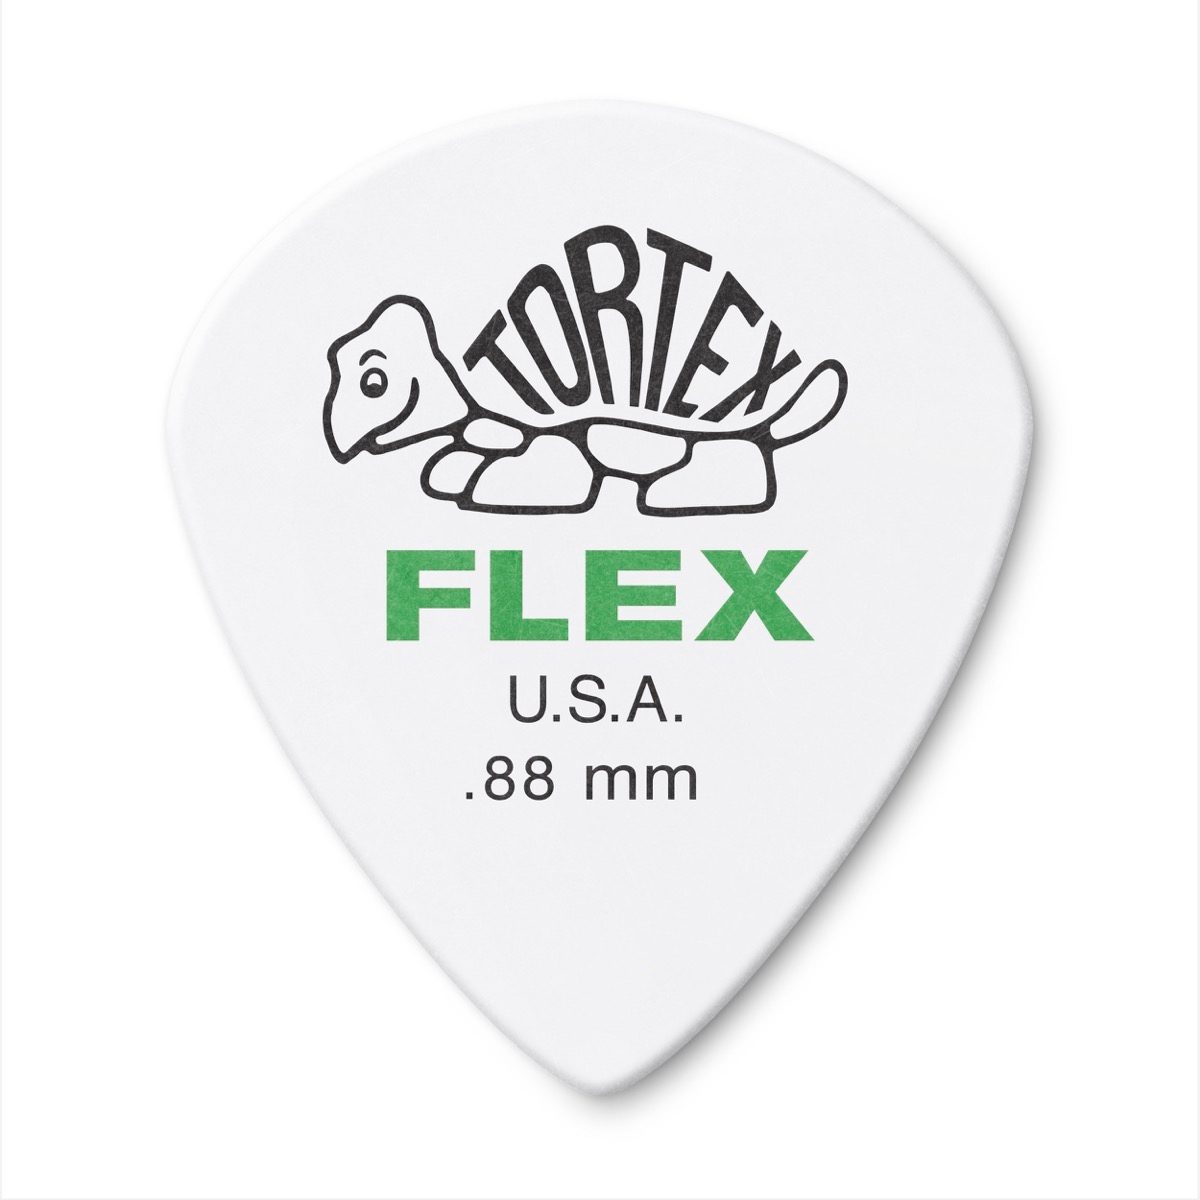 Dunlop 468 Tortex Flex Jazz III Guitar Picks, 12-Pack, 0.88mm